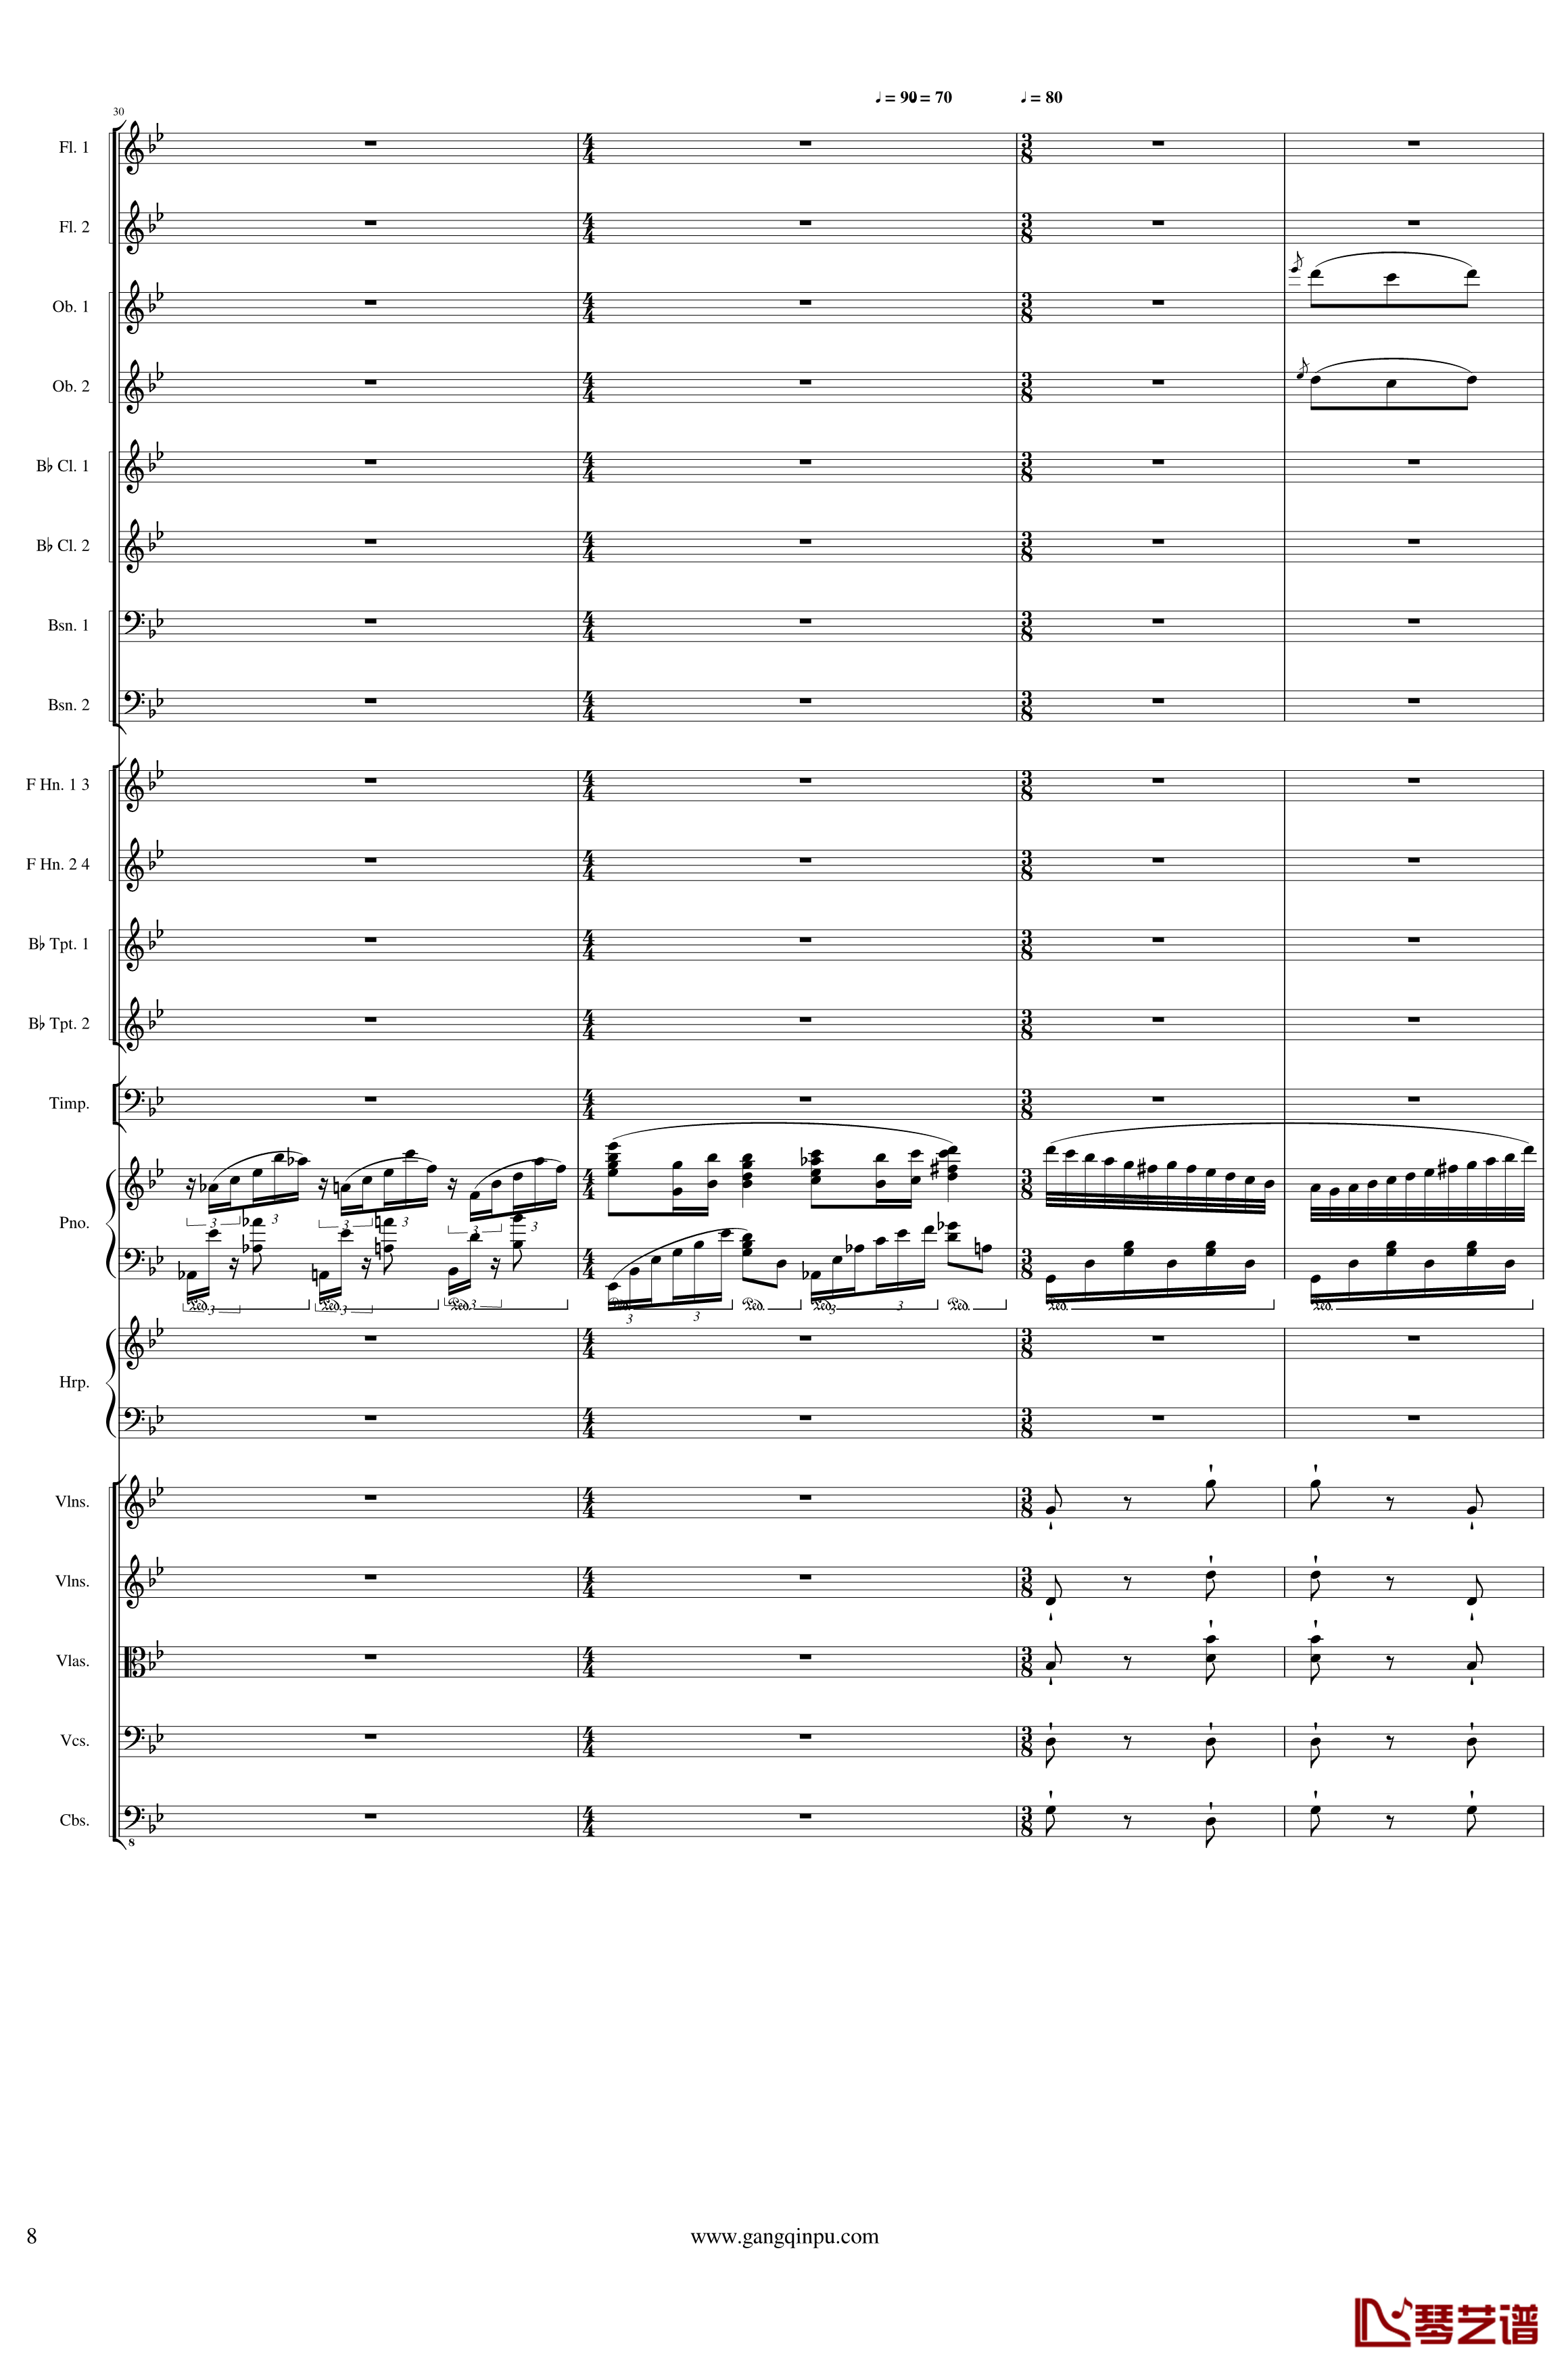 Symphonic Poem No.3, Op.91 Part 1钢琴谱-一个球8